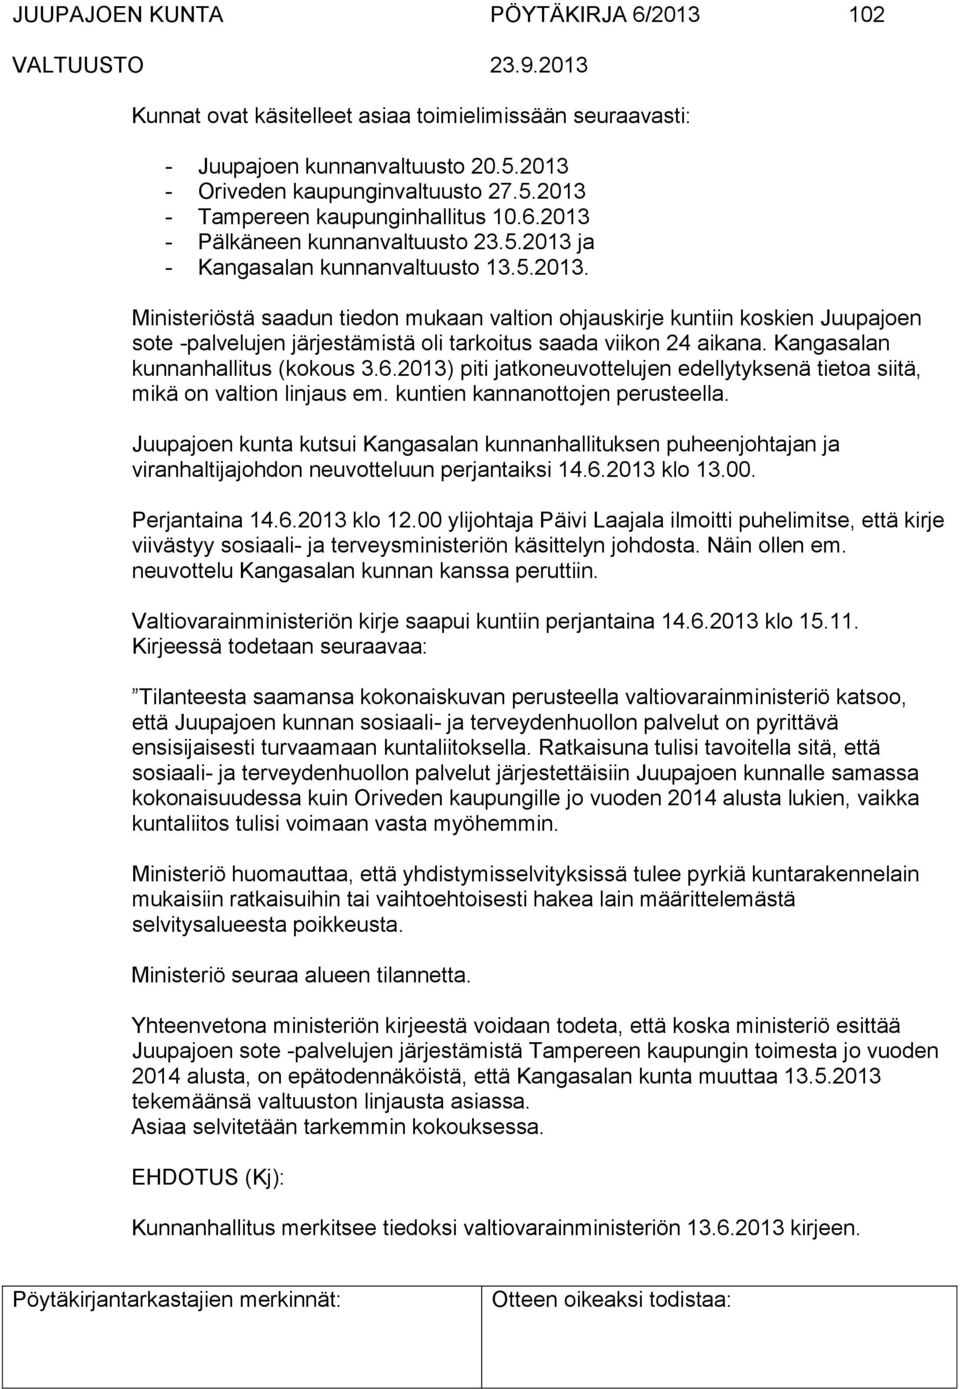 Kangasalan kunnanhallitus (kokous 3.6.2013) piti jatkoneuvottelujen edellytyksenä tietoa siitä, mikä on valtion linjaus em. kuntien kannanottojen perusteella.